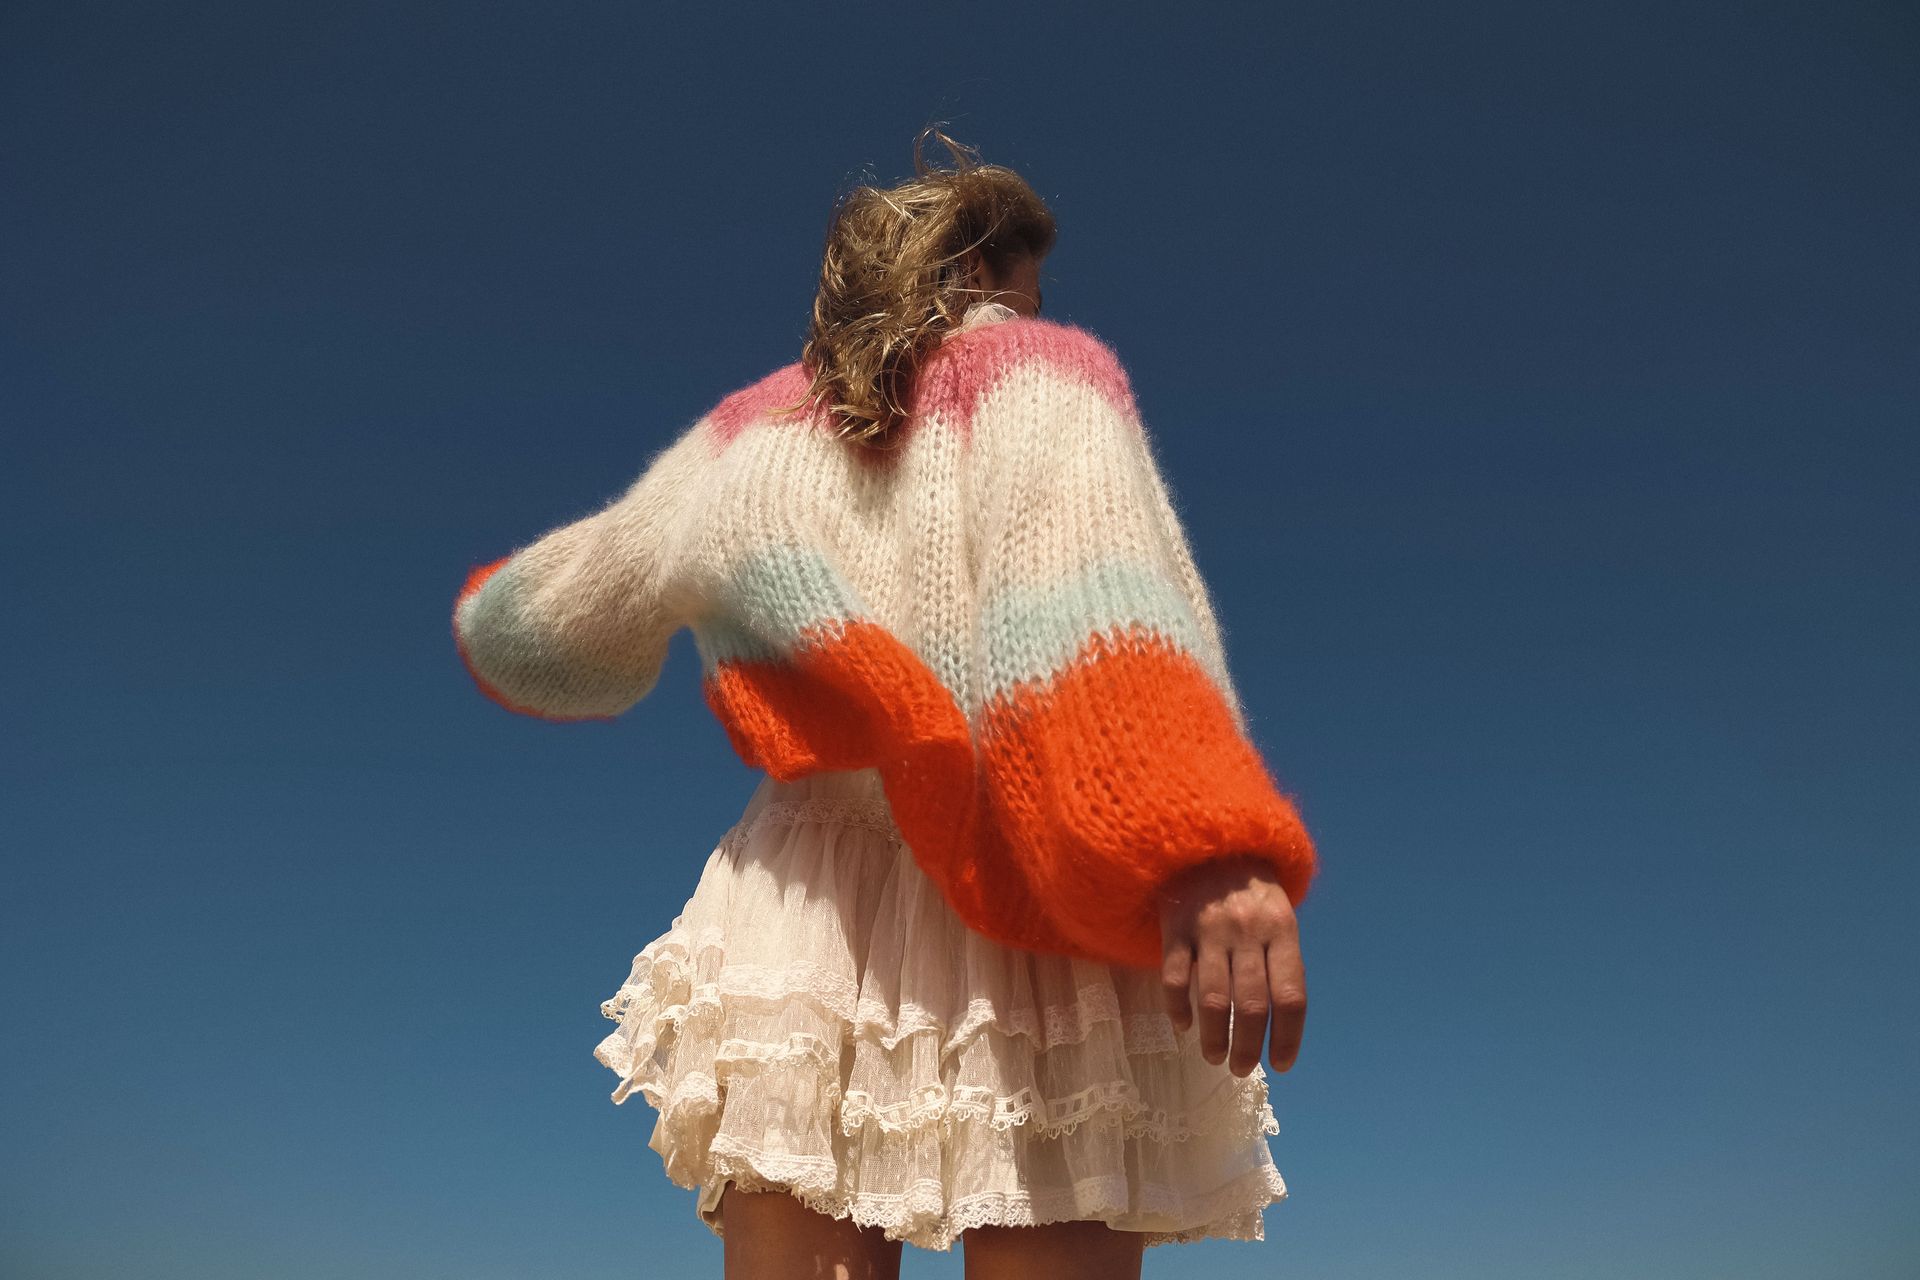 Juliette Mohair handknit sweater